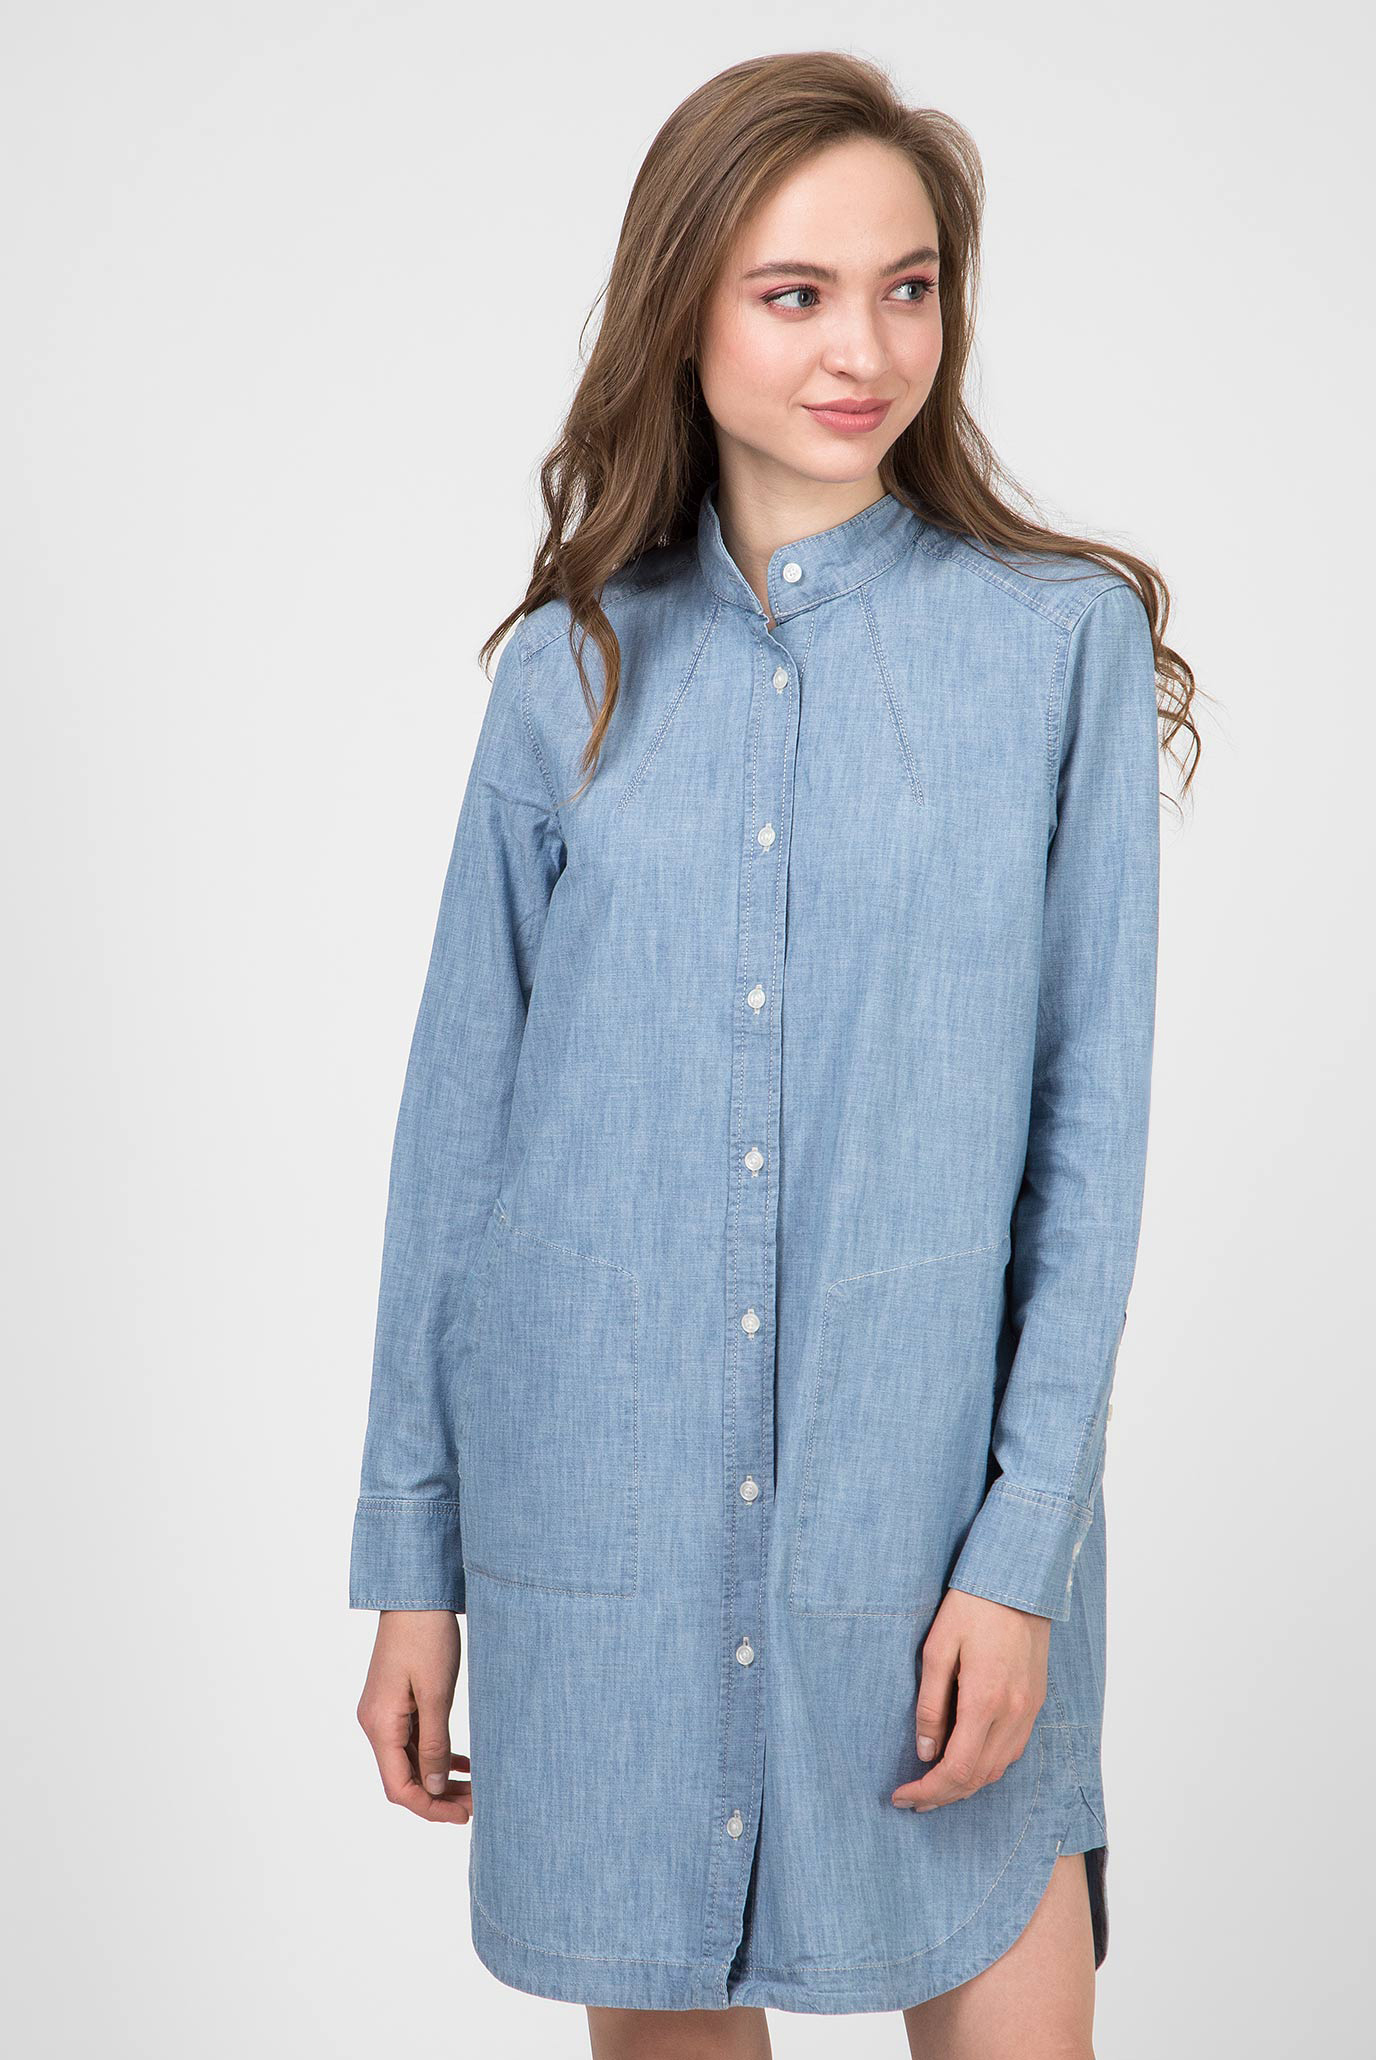 Жіноча блакитна джинсова сукня Milary shirt 1